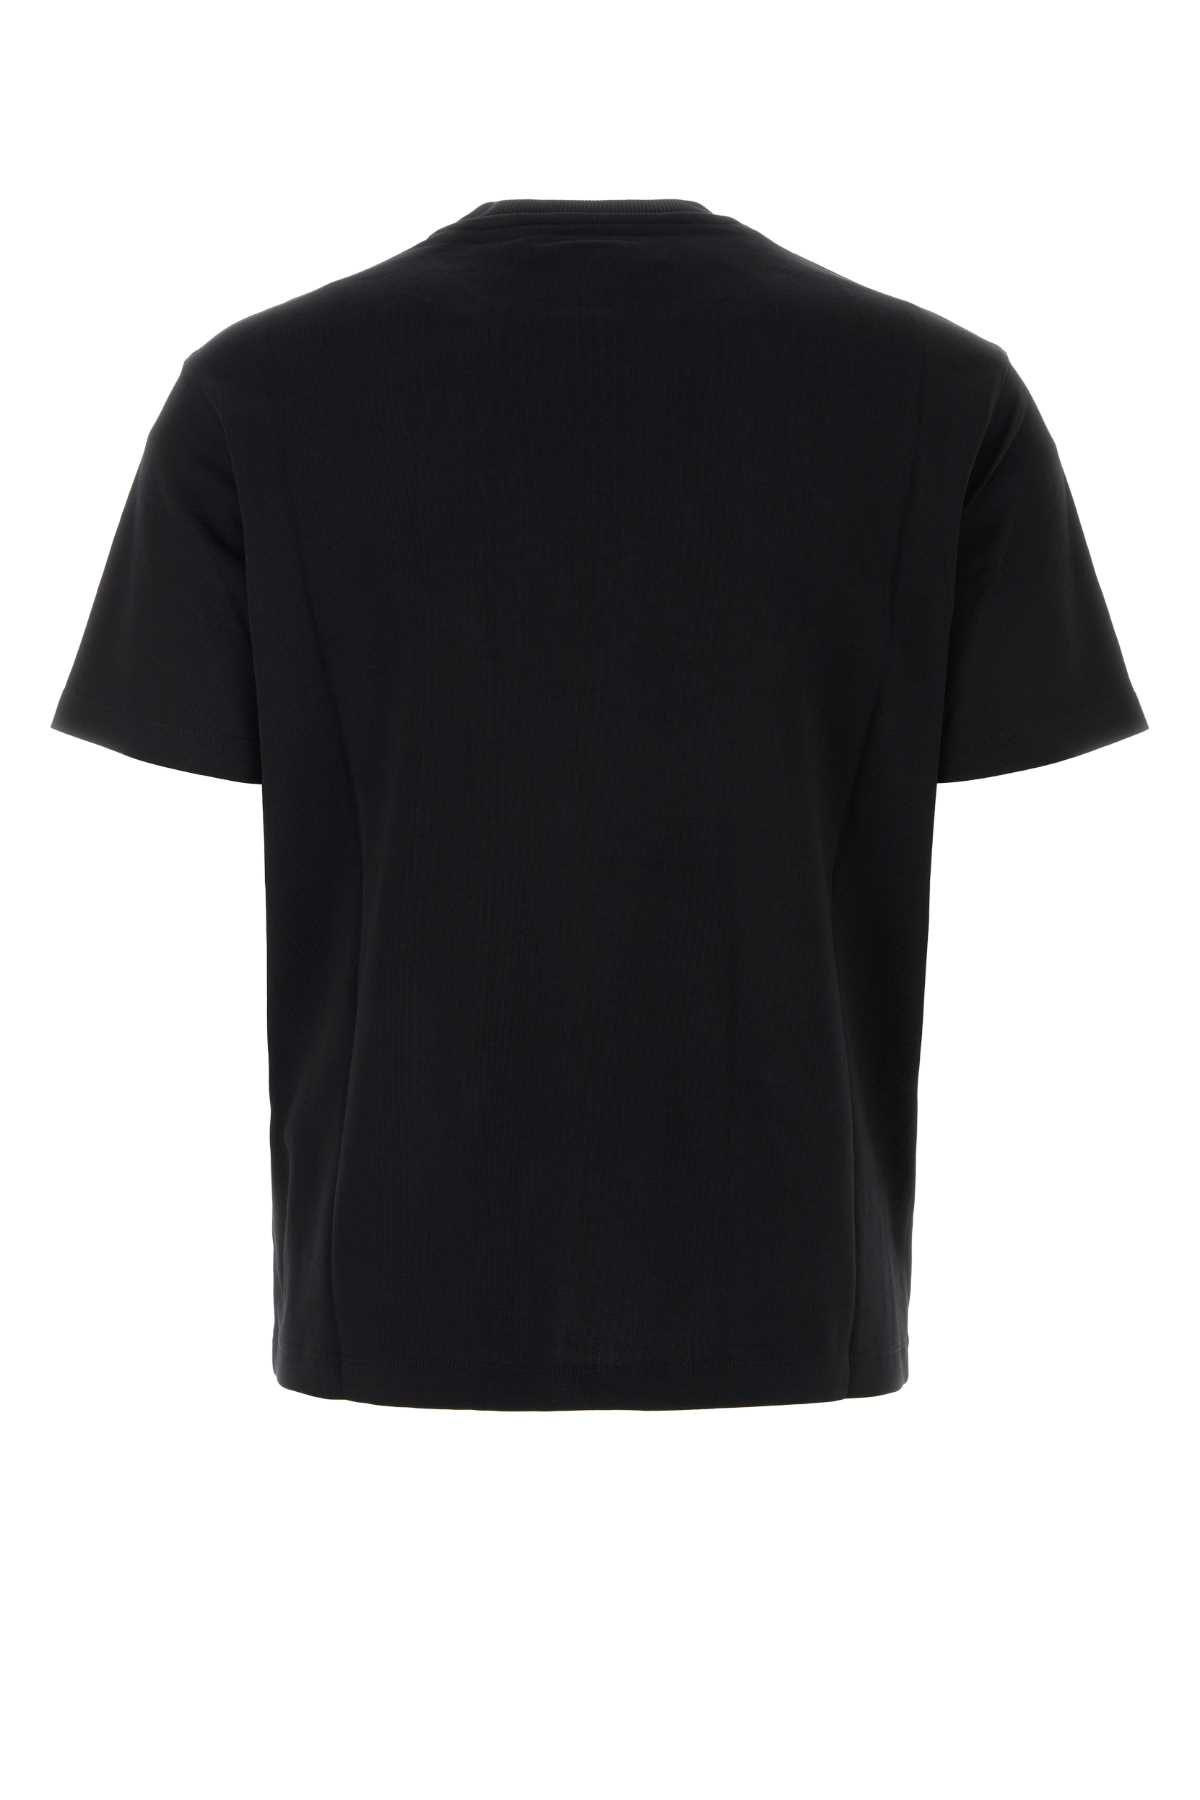 Shop Emporio Armani Black Cotton T-shirt In 0095